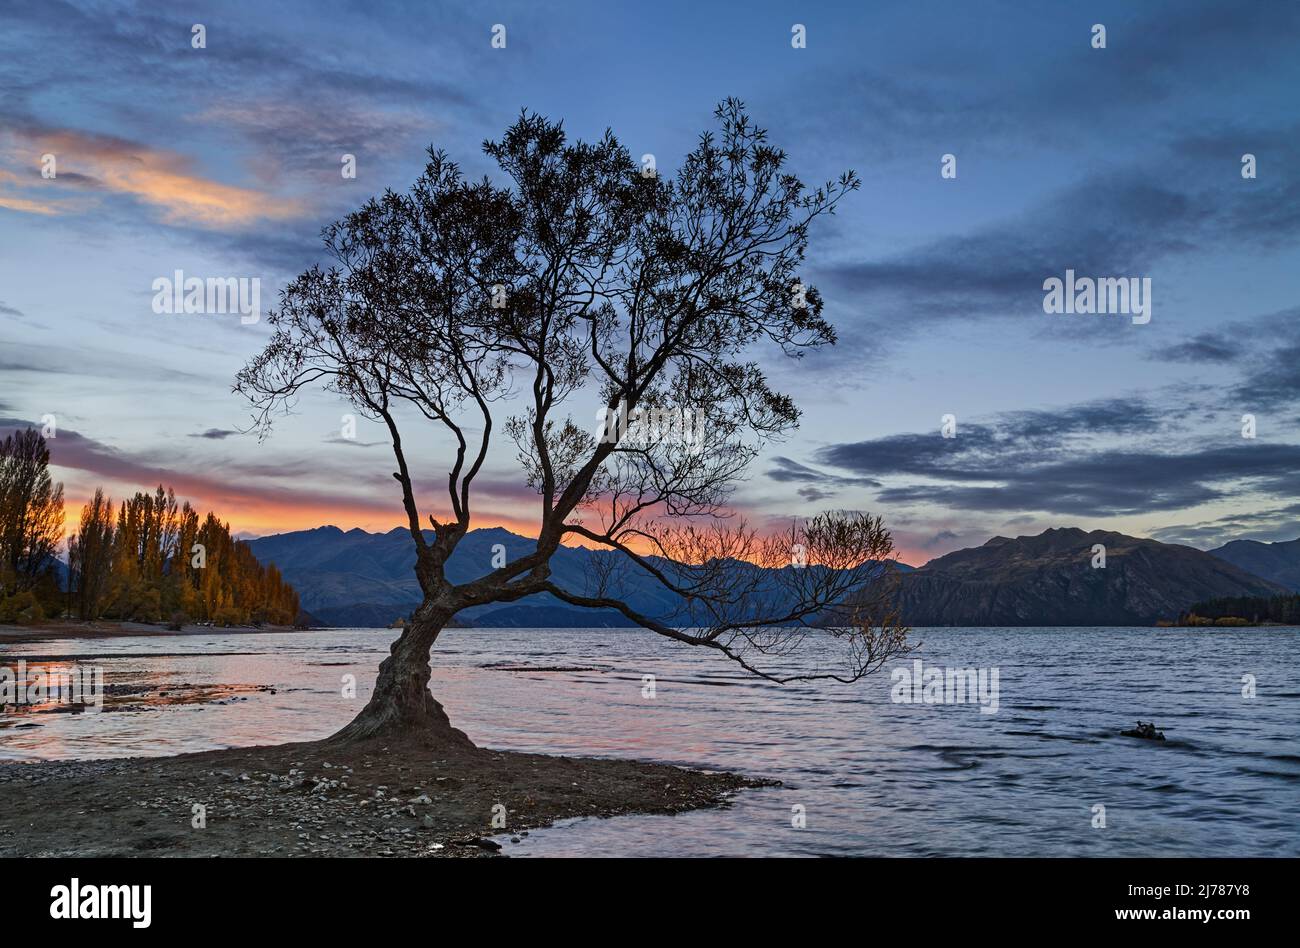 El famoso árbol solitario del lago Wanaka al atardecer, Isla del Sur, Nueva Zelanda Foto de stock